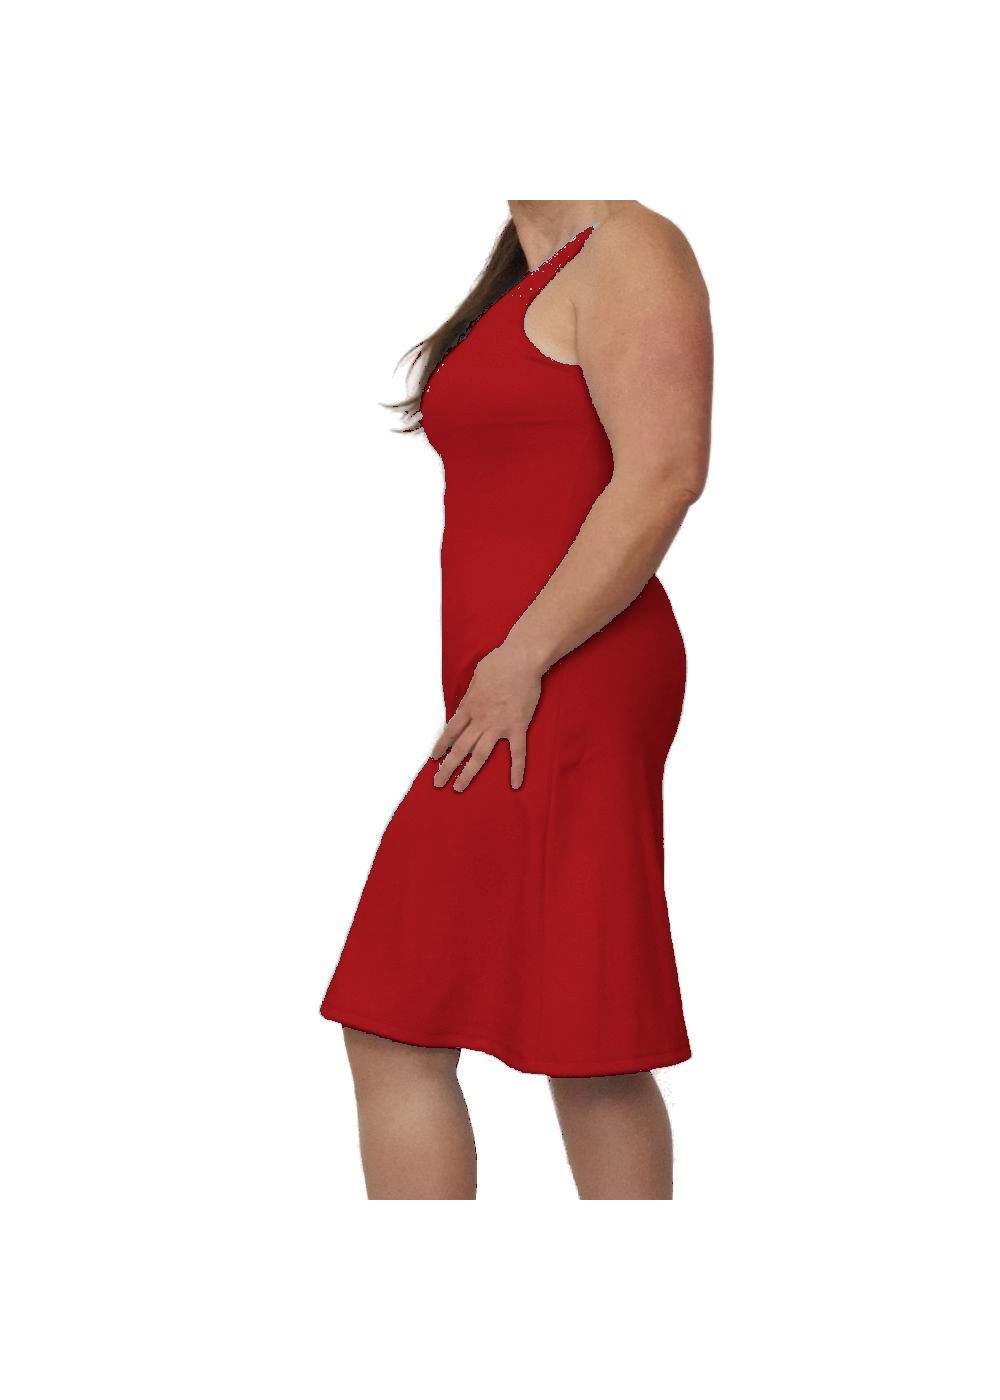 Red strap dress with V-neck - Deutsche Produktion